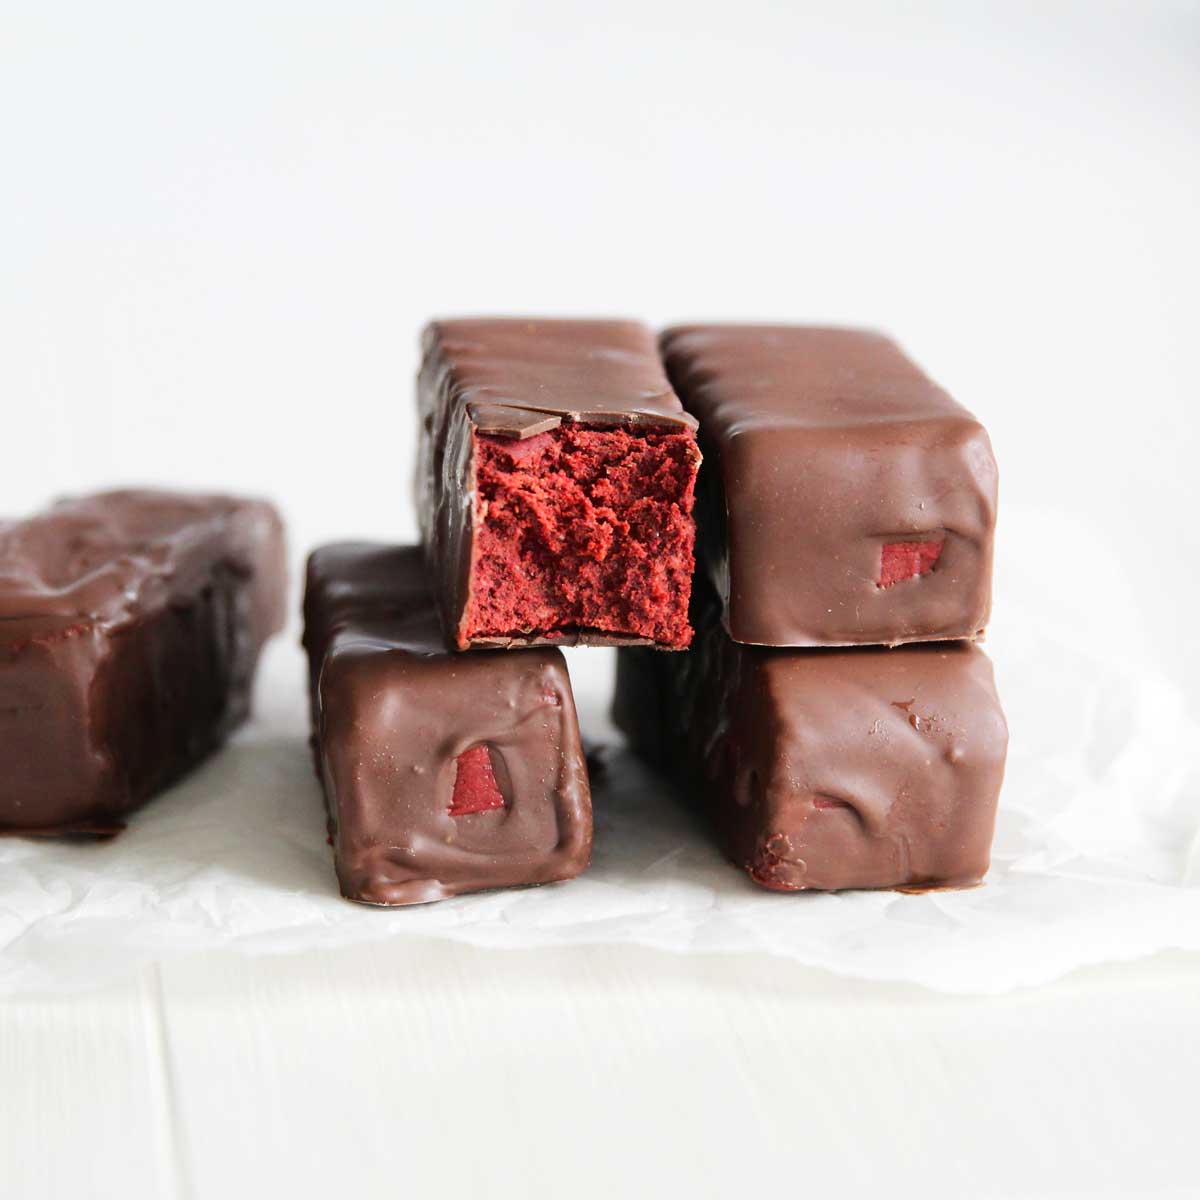 Gluten Free Red Velvet Cake Protein Bars (The Best Guilt-Free Dessert) - PB Fit Protein Bars